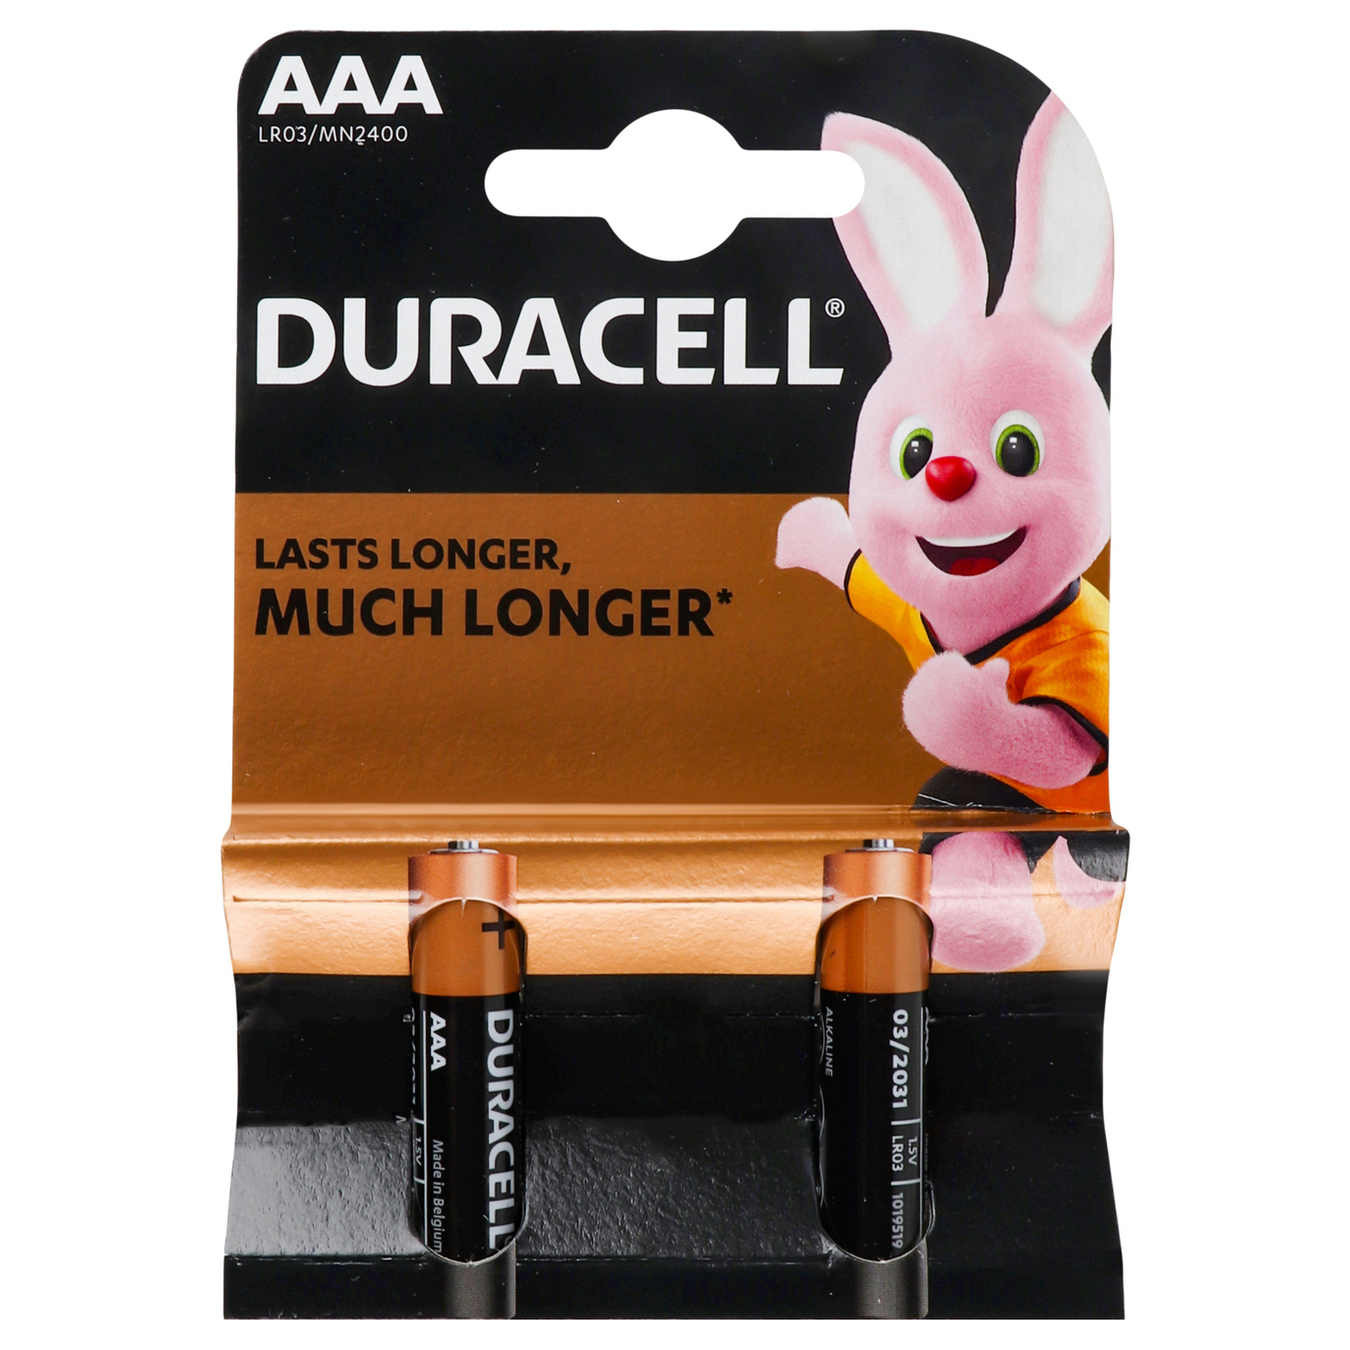 Duracell AAA Alkaline Batteries 2pcs